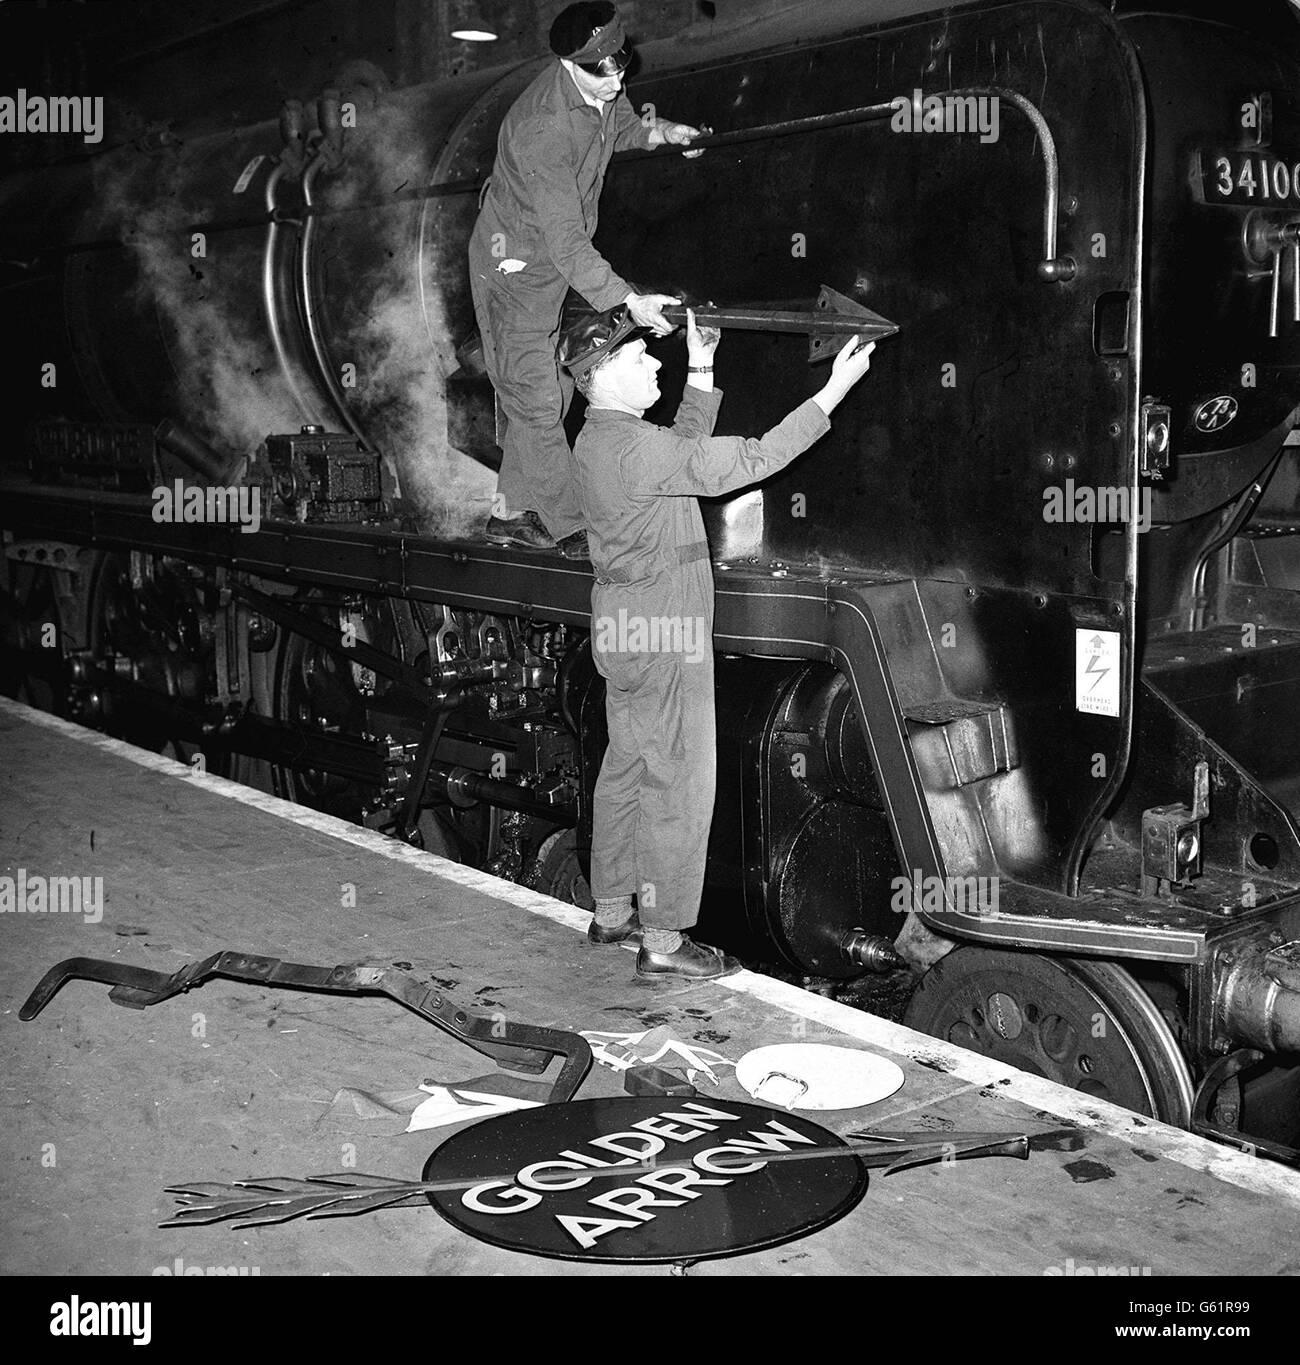 Le transport de vapeur a fait sa dernière apparition sur le train à bateau crack All-Pullman « Golden Arrow » de la région du Sud lorsqu'il a été arrêté à la gare Victoria de Londres. Banque D'Images